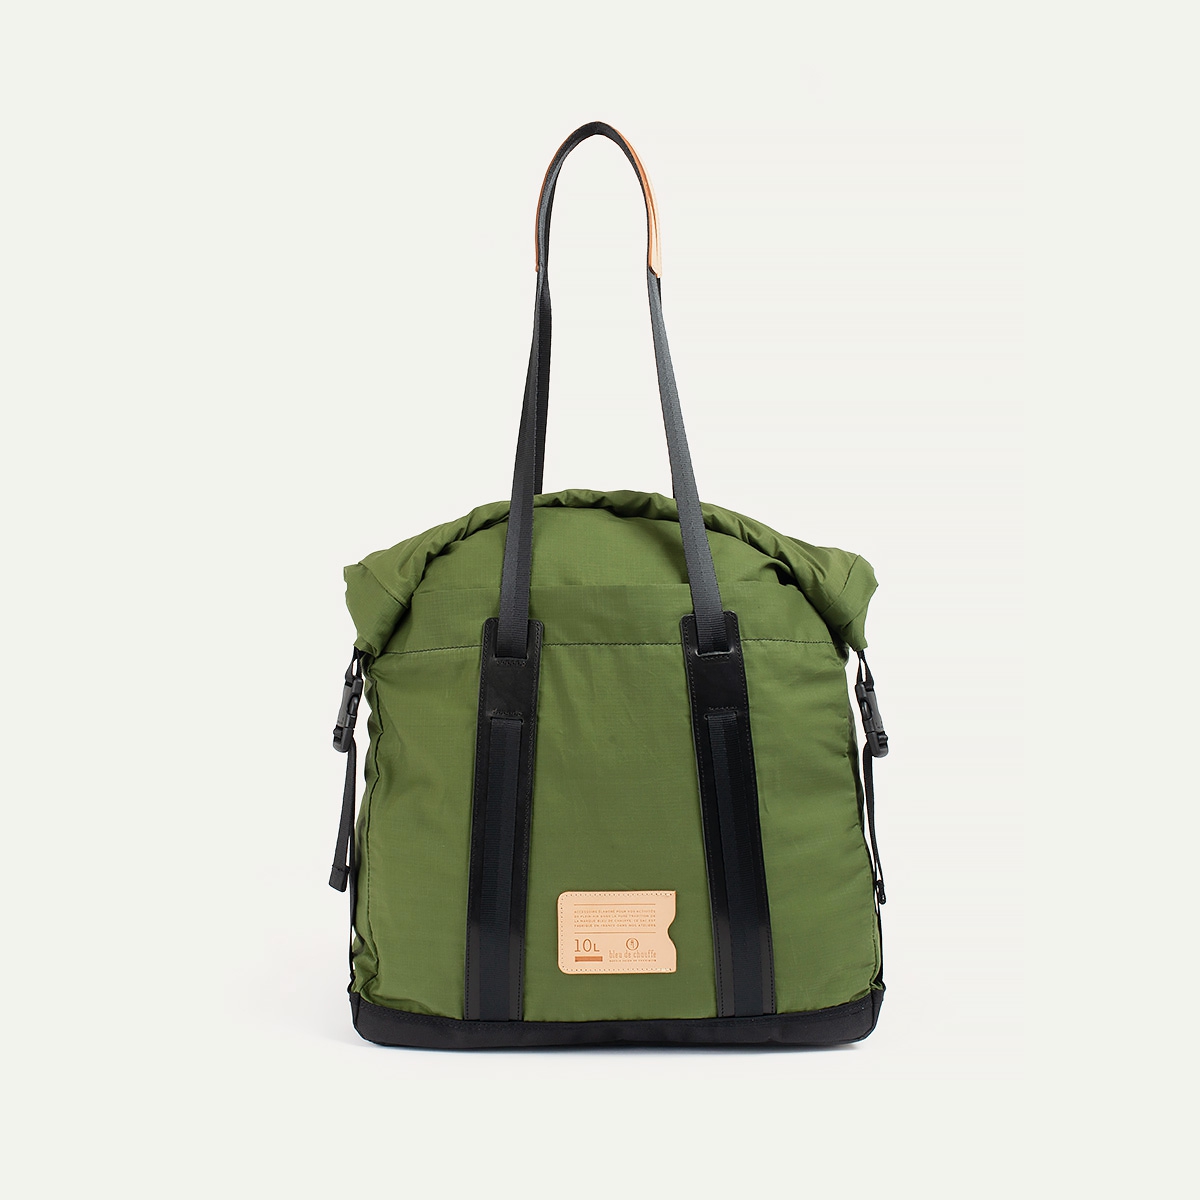 10L Barda Tote bag - Bancha Green (image n°1)